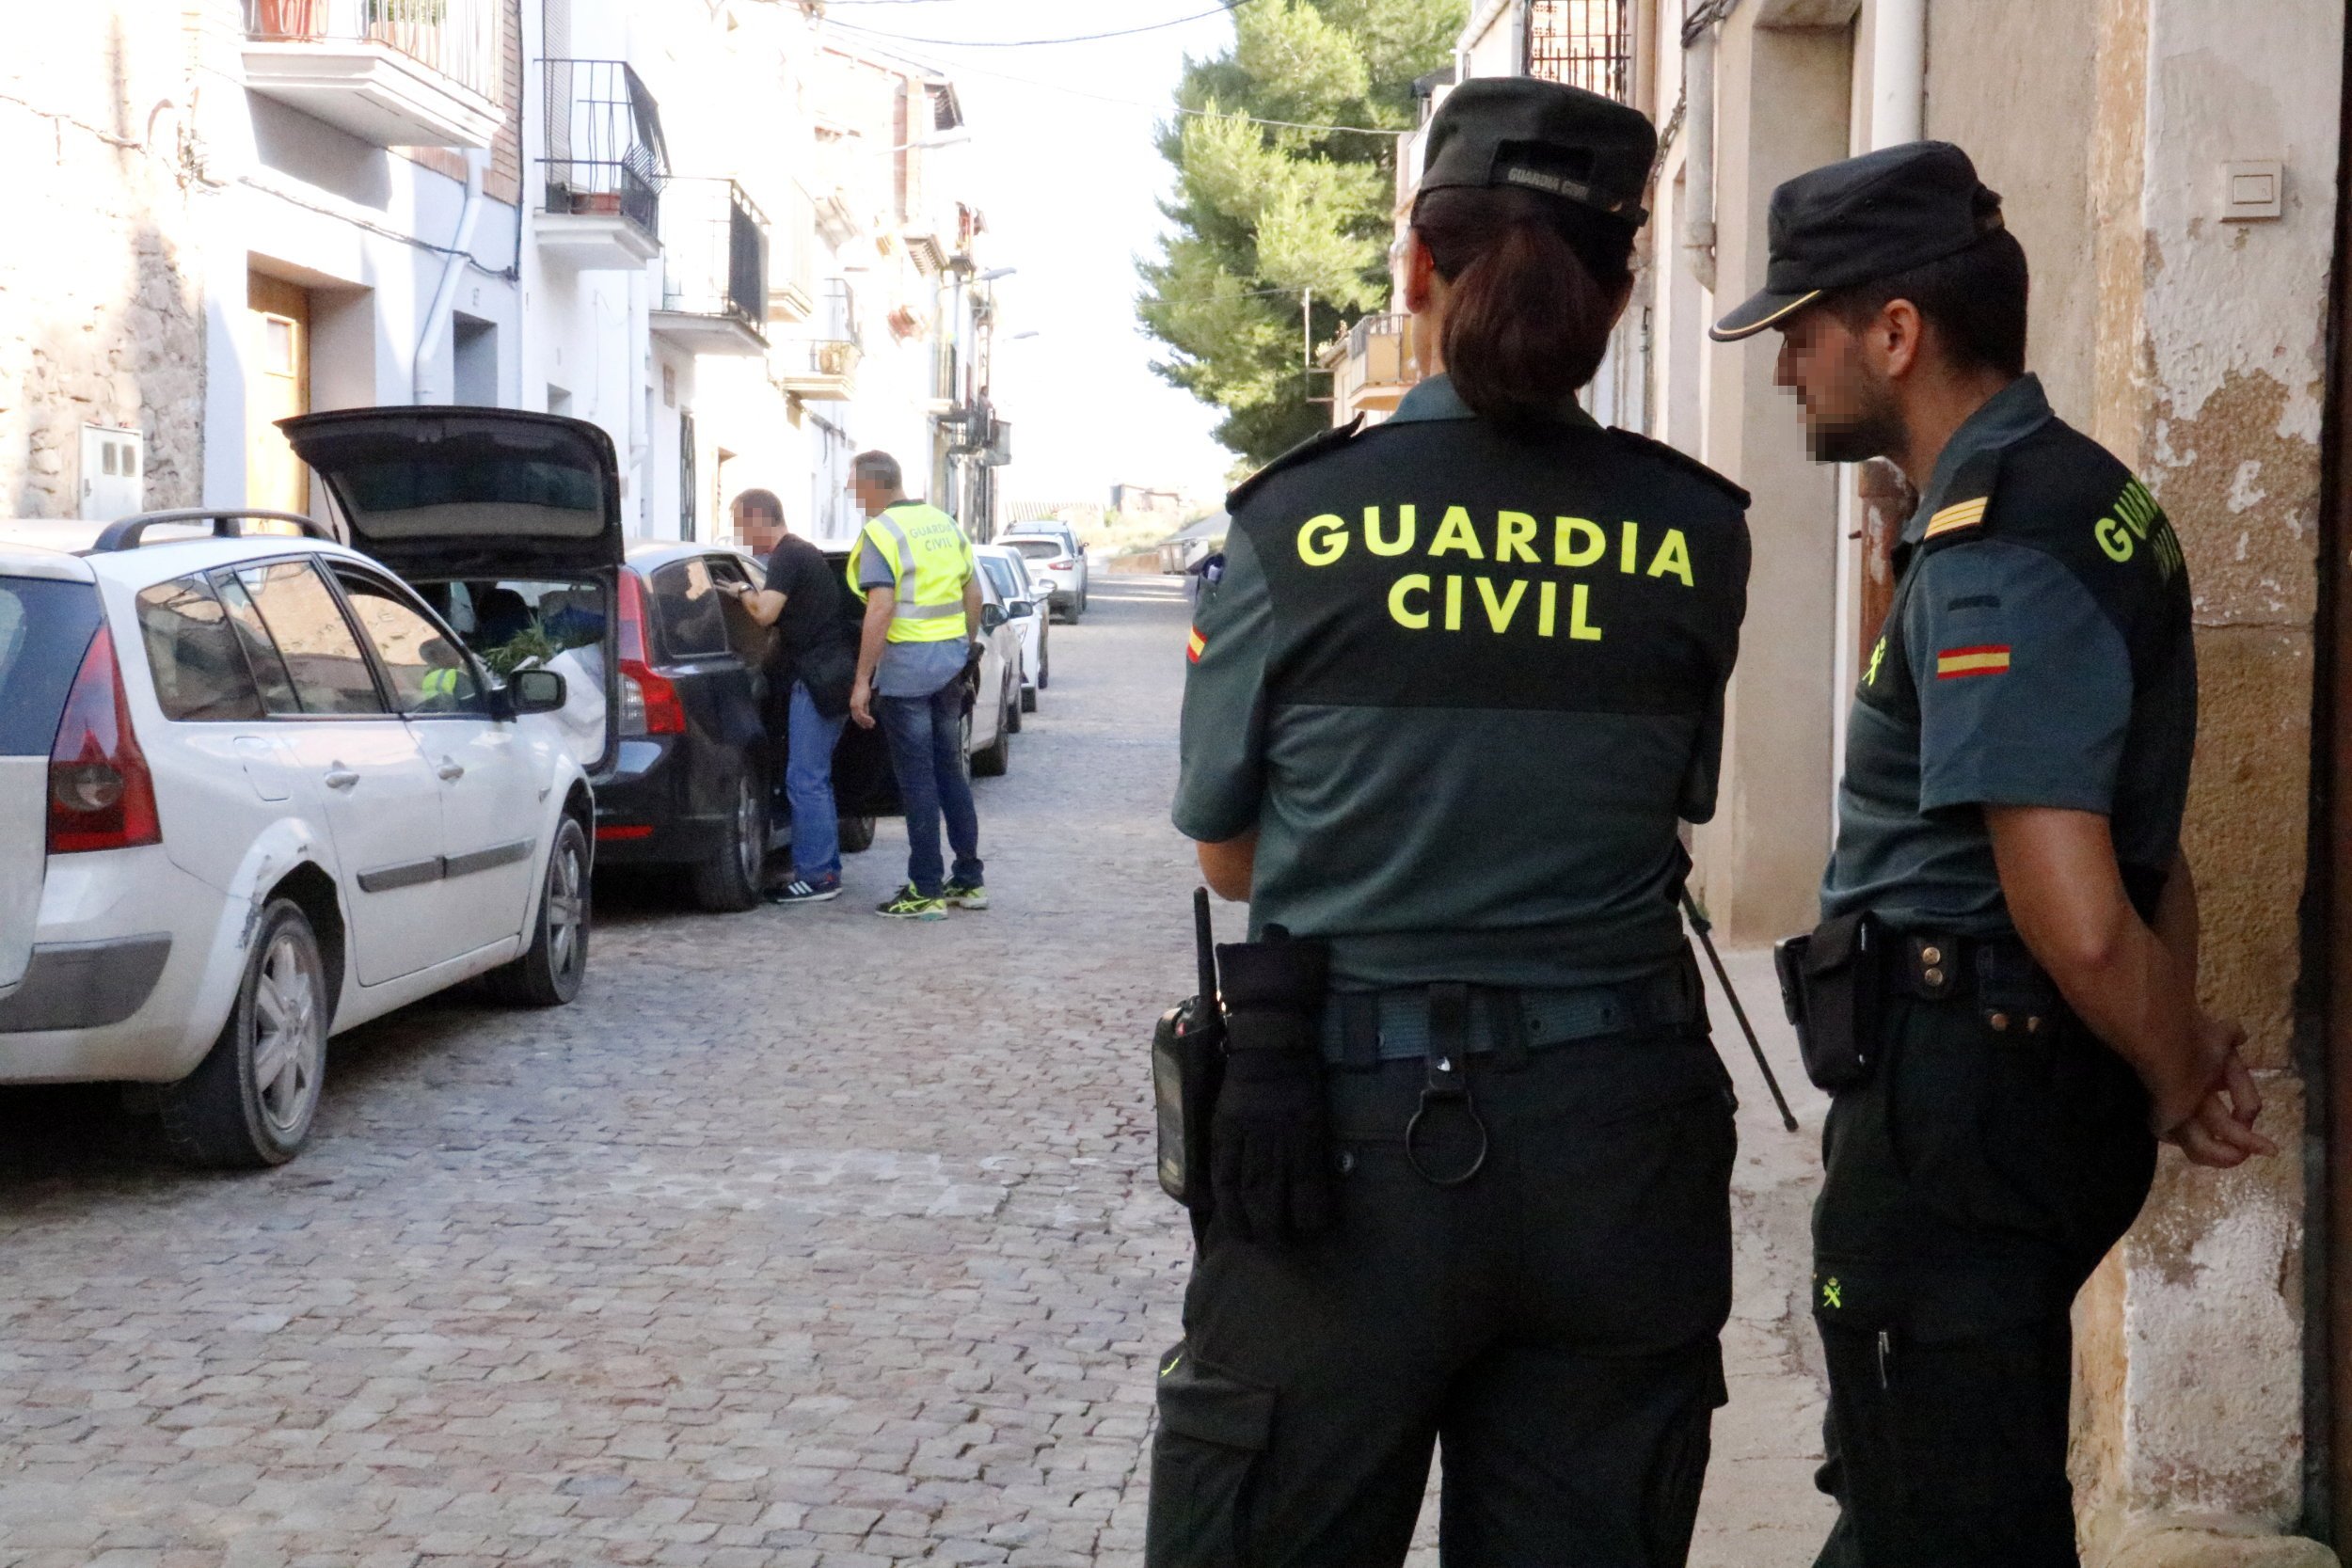 200 guardias civiles llevan 4 meses a Catalunya para controlar el 'procés'